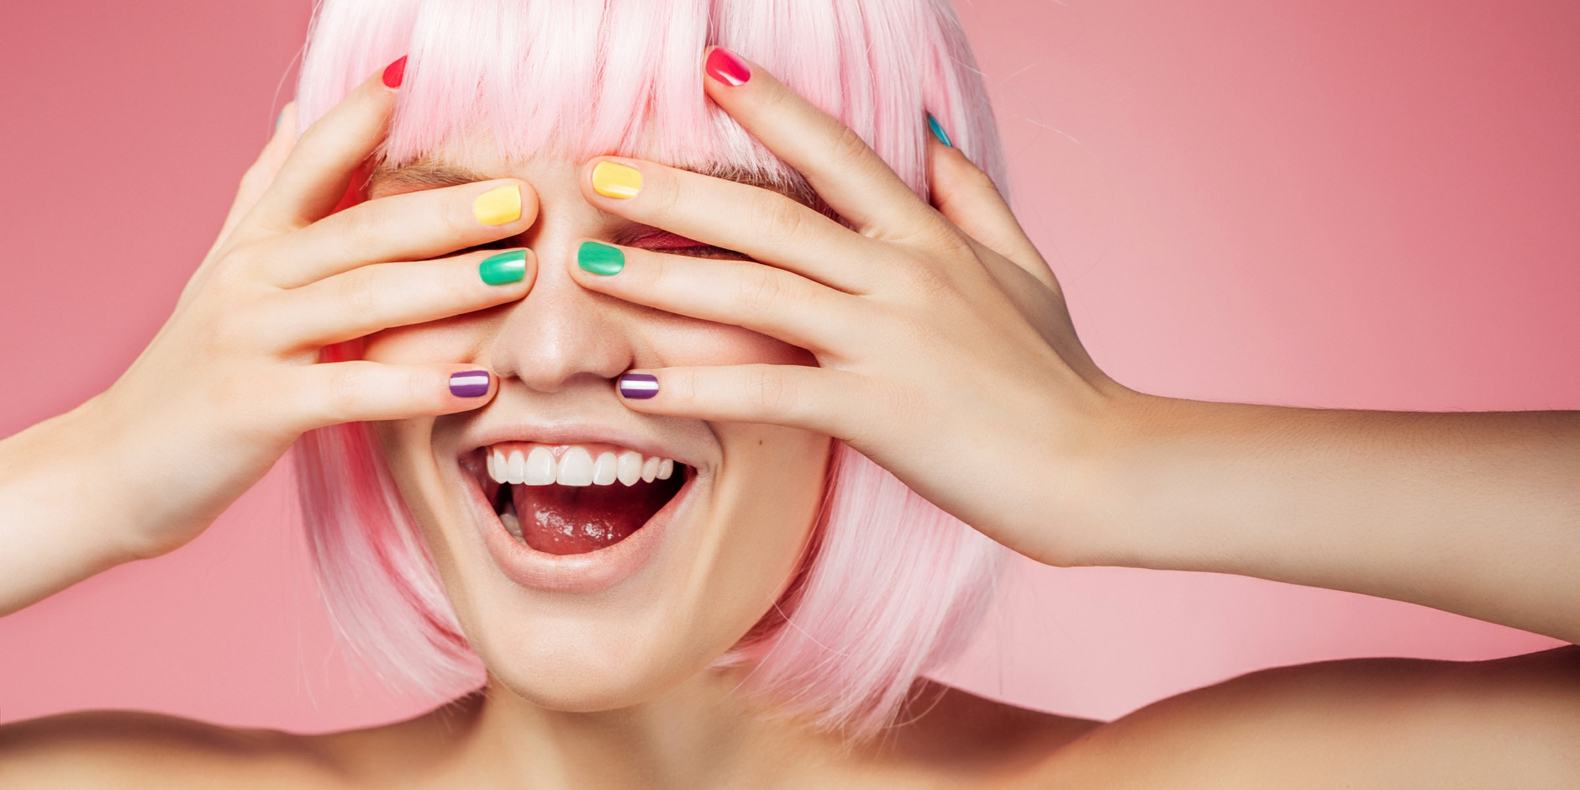 Rainbow Nails Nail Trend Neon Colors Nail Polish Pink Hair Color Short Bob Hairstyle